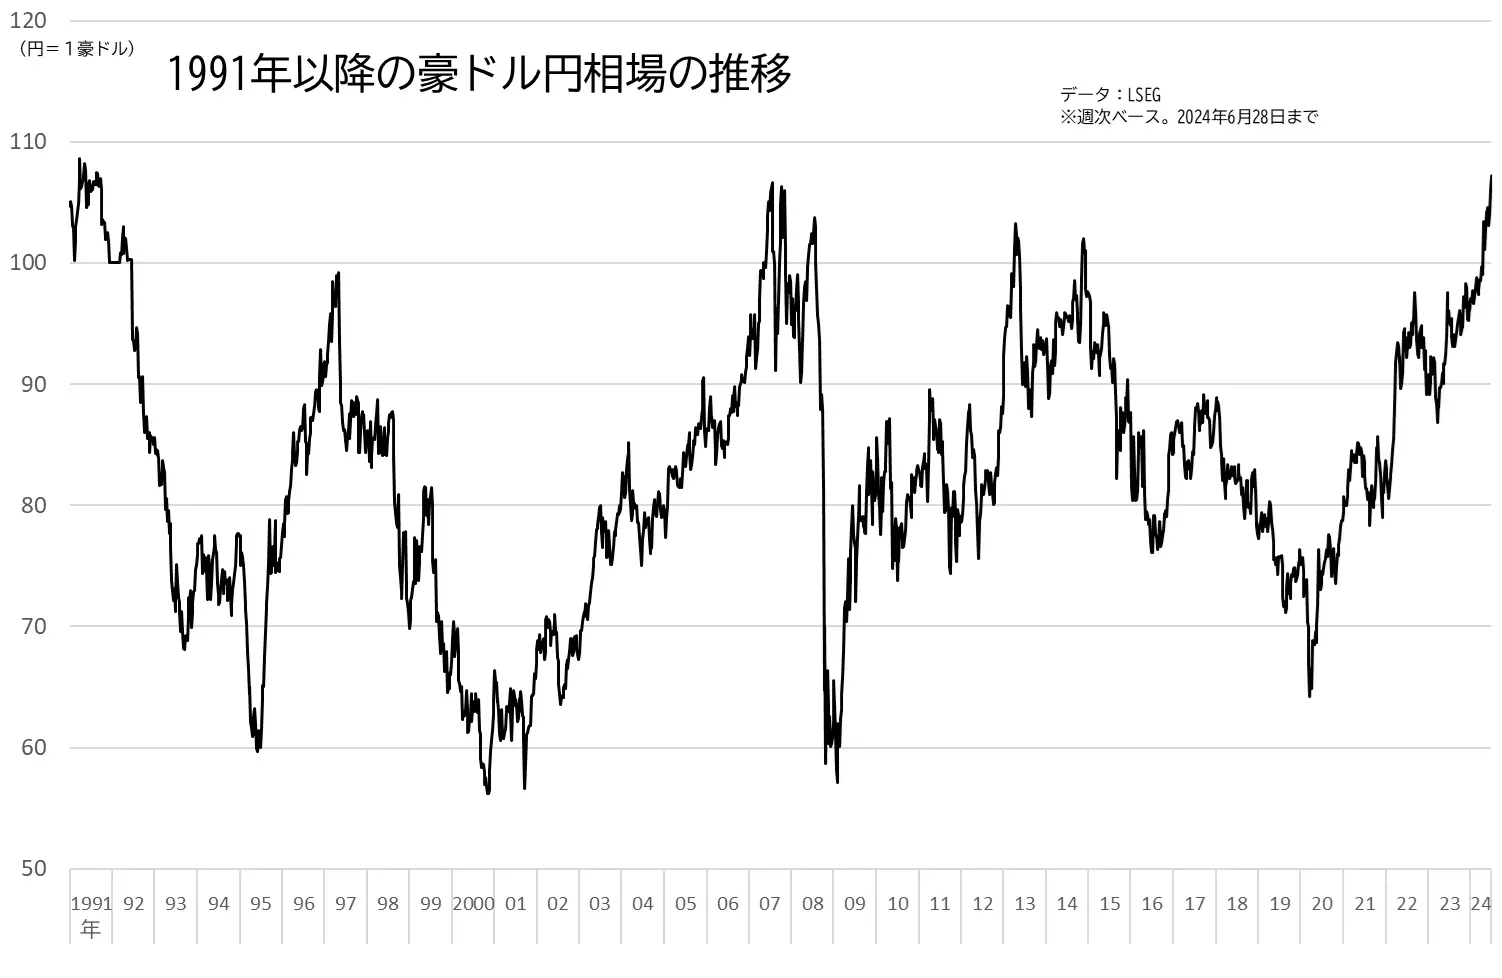 豪ドル円相場の推移のグラフ（1991年以降、長期チャート）